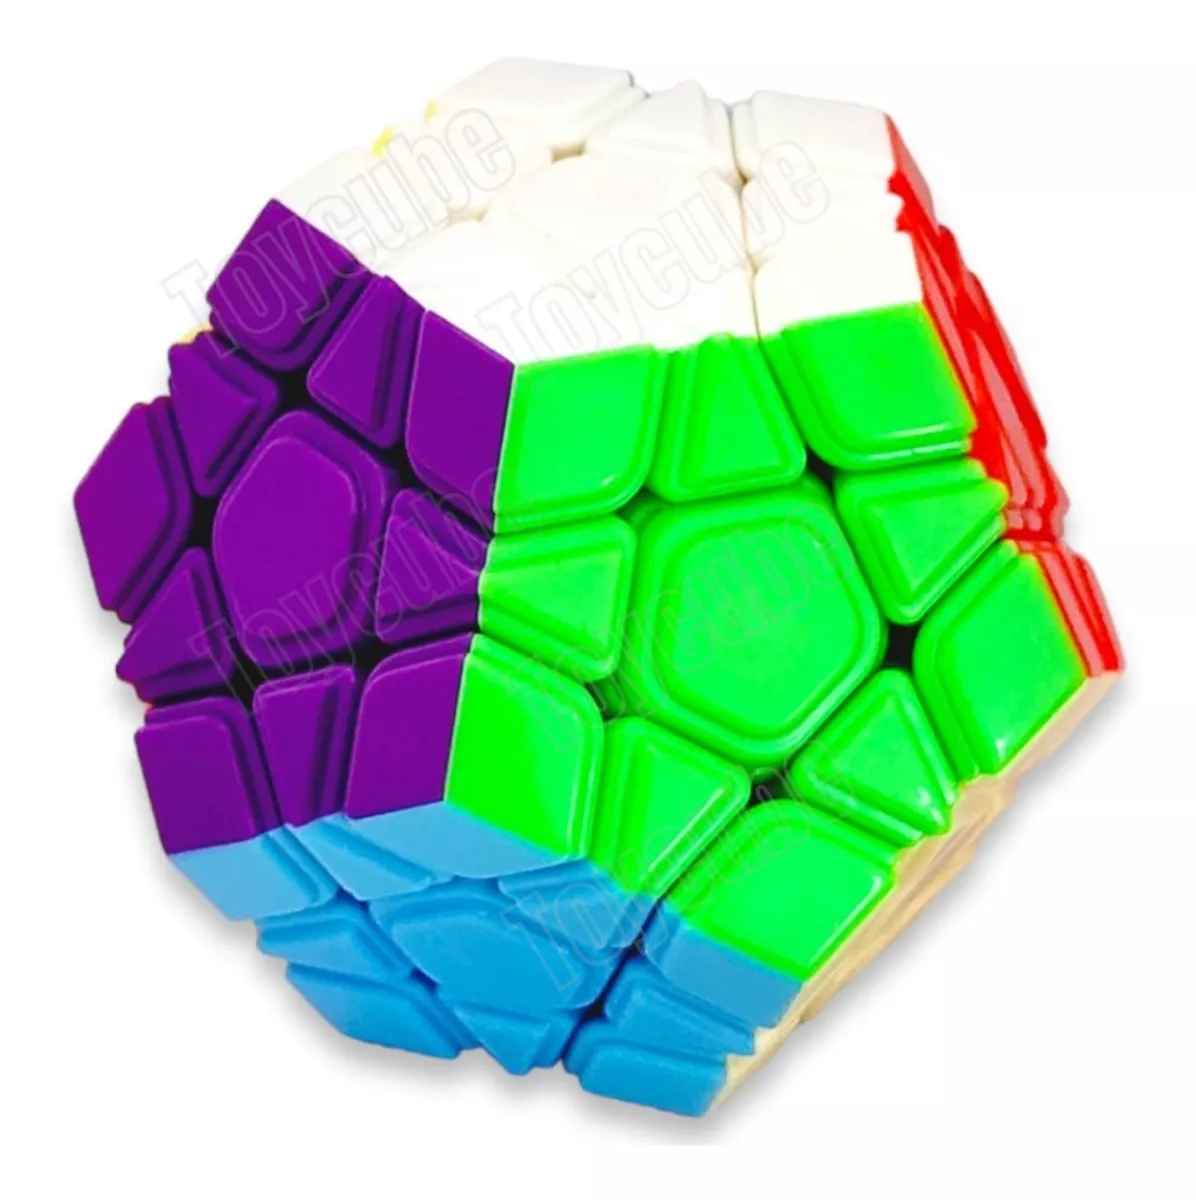 Cubo Mágico Megaminx Profissional, Dodecaedro (12 Lados)